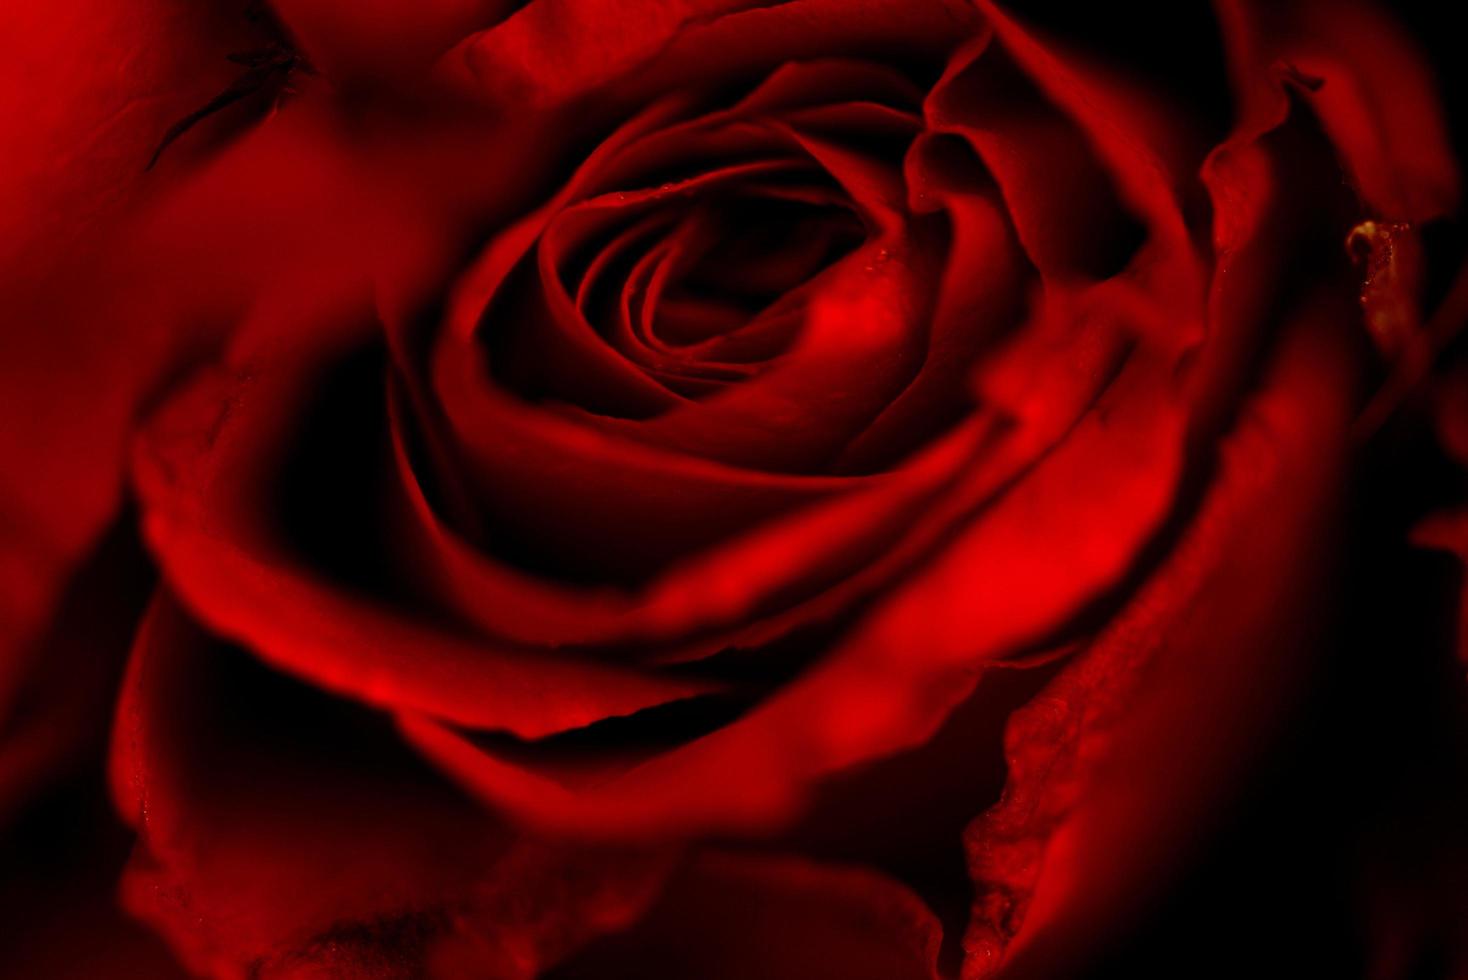 primo piano rosa naturale fresca sfondo fiori amore romantico giorno di san valentino concetto - rose rosse bouquet di fiori su sfondo scuro foto